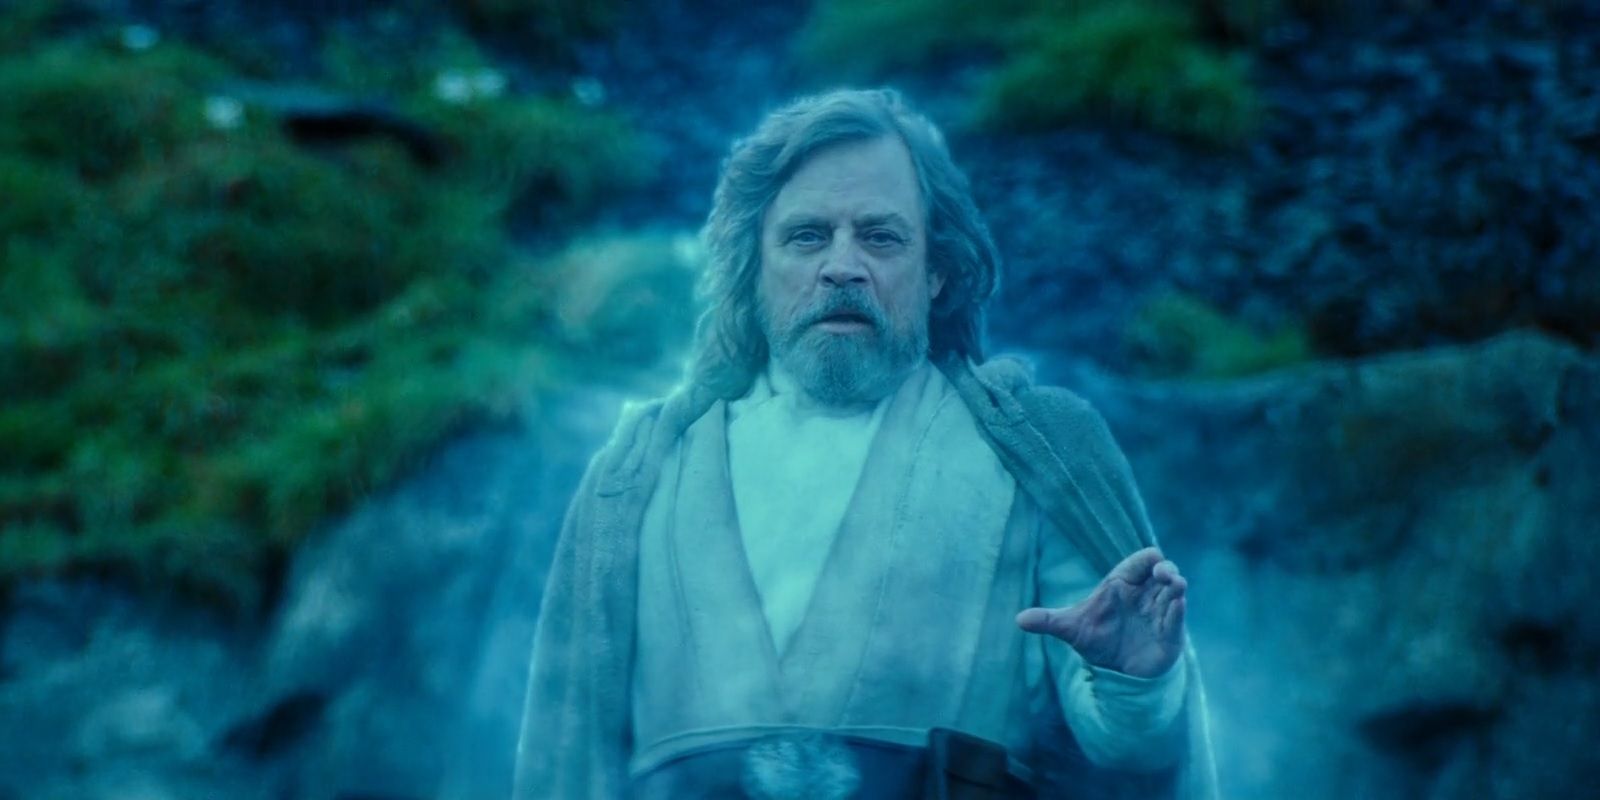 Luke Skywalker appears as a Force ghost.